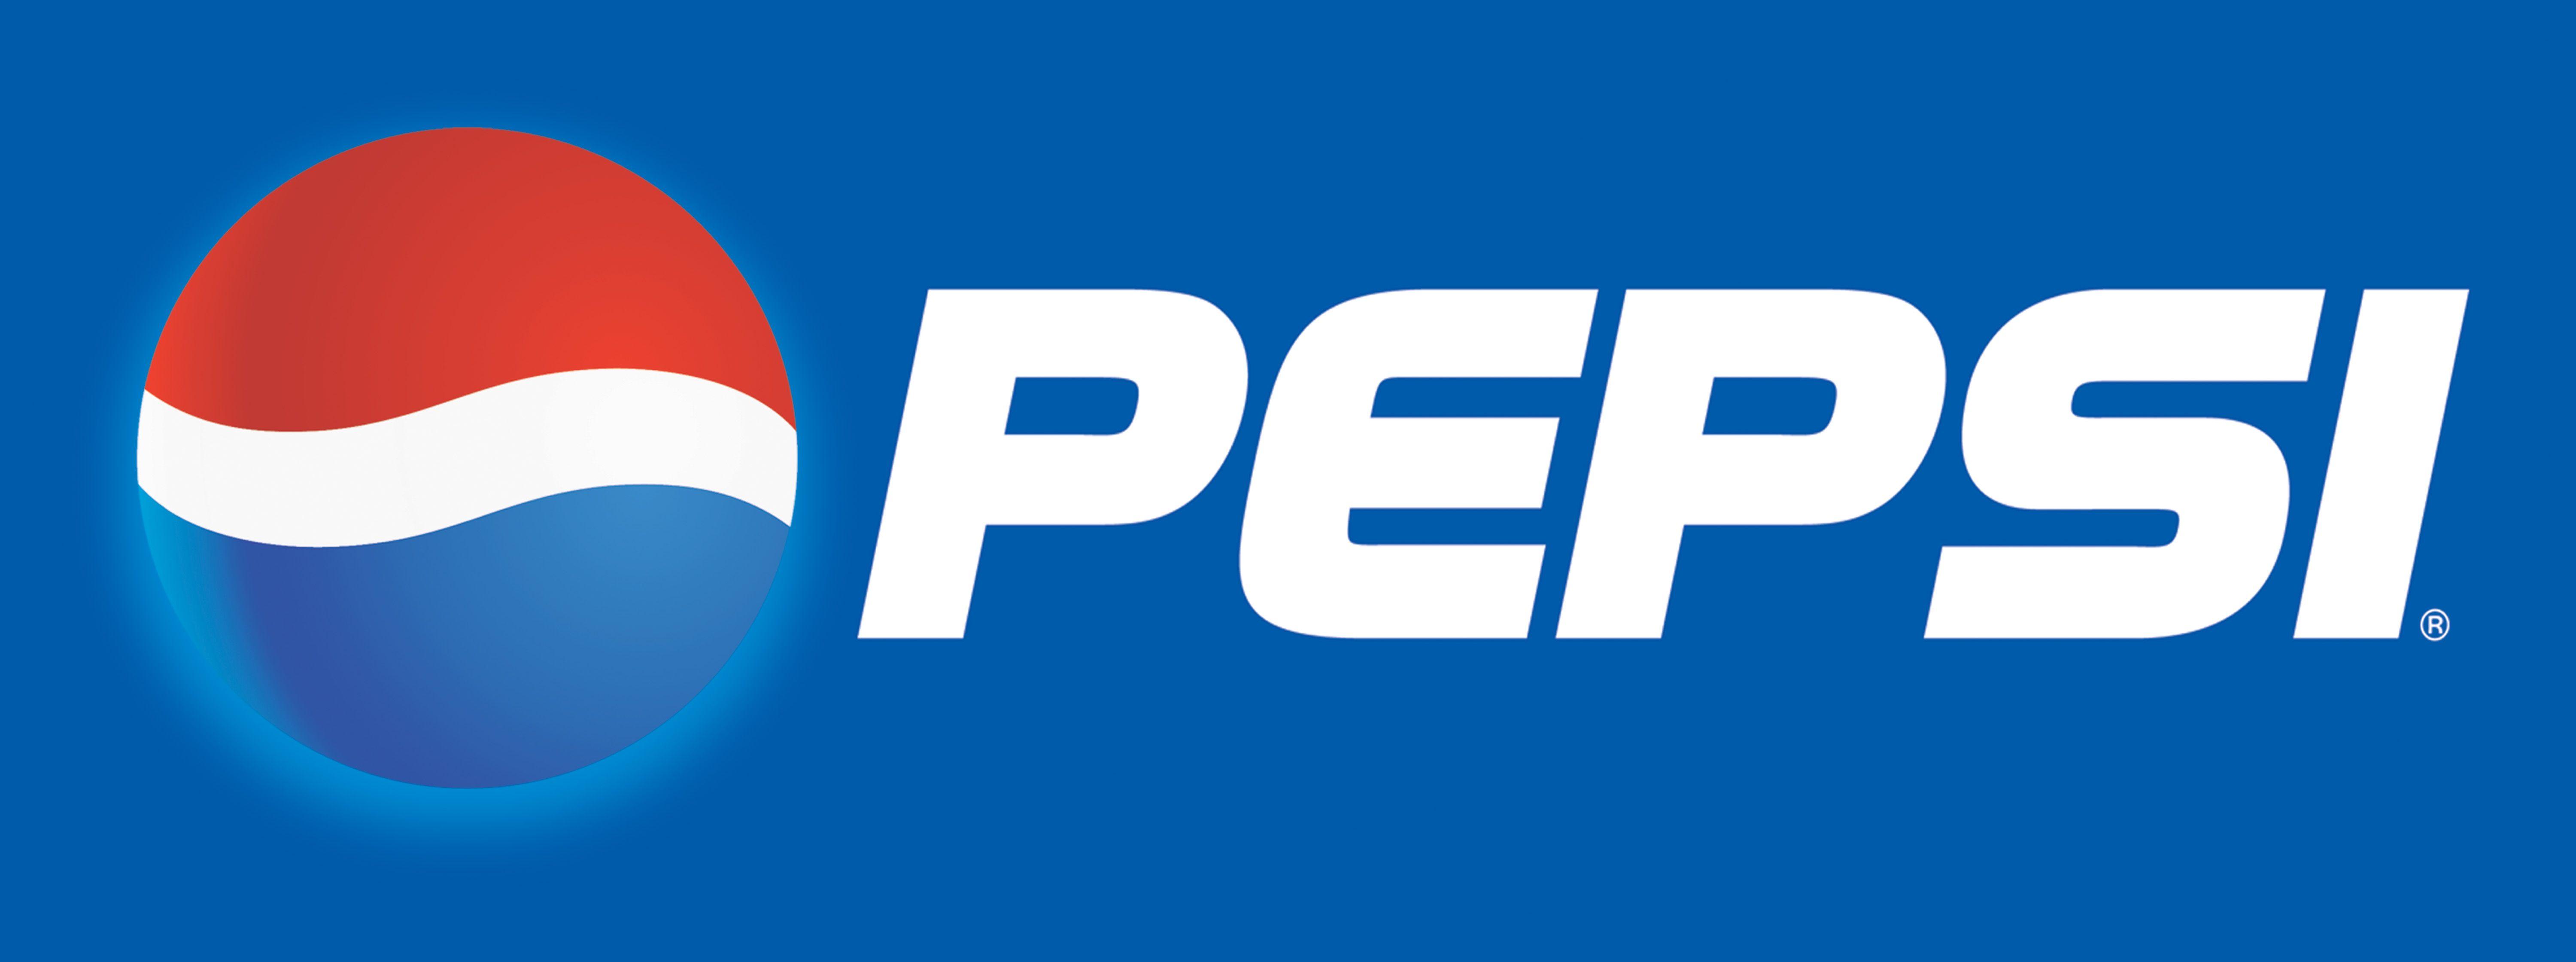 Pepsi Logo - Pepsi-logo-21 - Eau Claire Indoor Sports Center